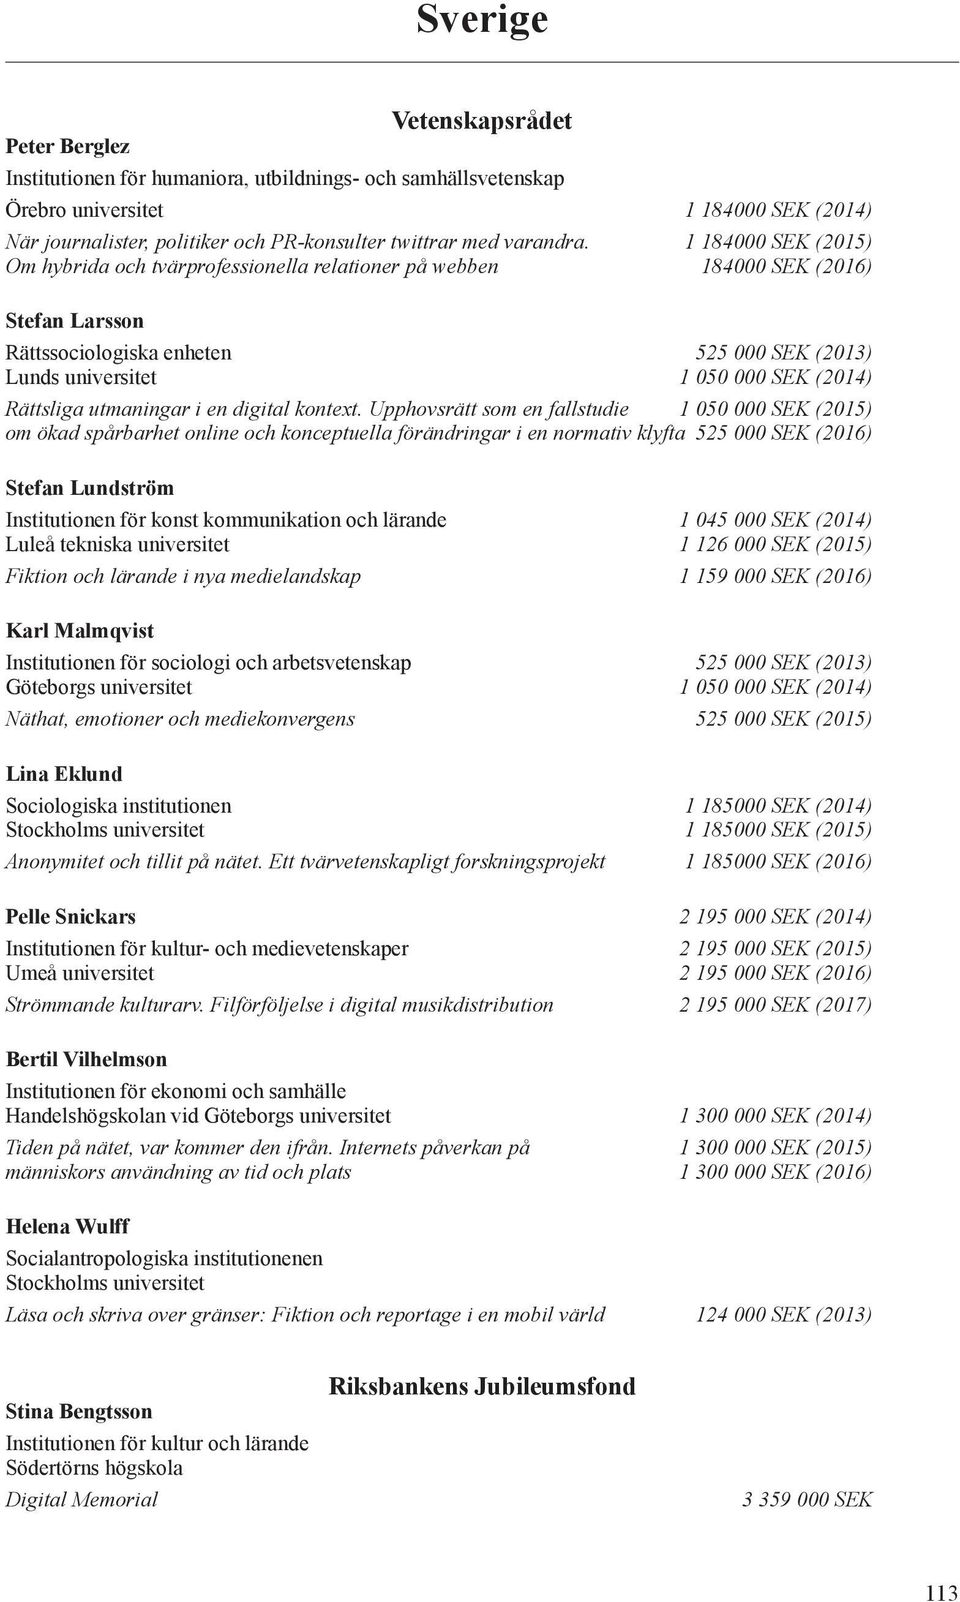 1 184000 SEK (2015) Om hybrida och tvärprofessionella relationer på webben 184000 SEK (2016) Stefan Larsson Rättssociologiska enheten 525 000 SEK (2013) Lunds universitet 1 050 000 SEK (2014)